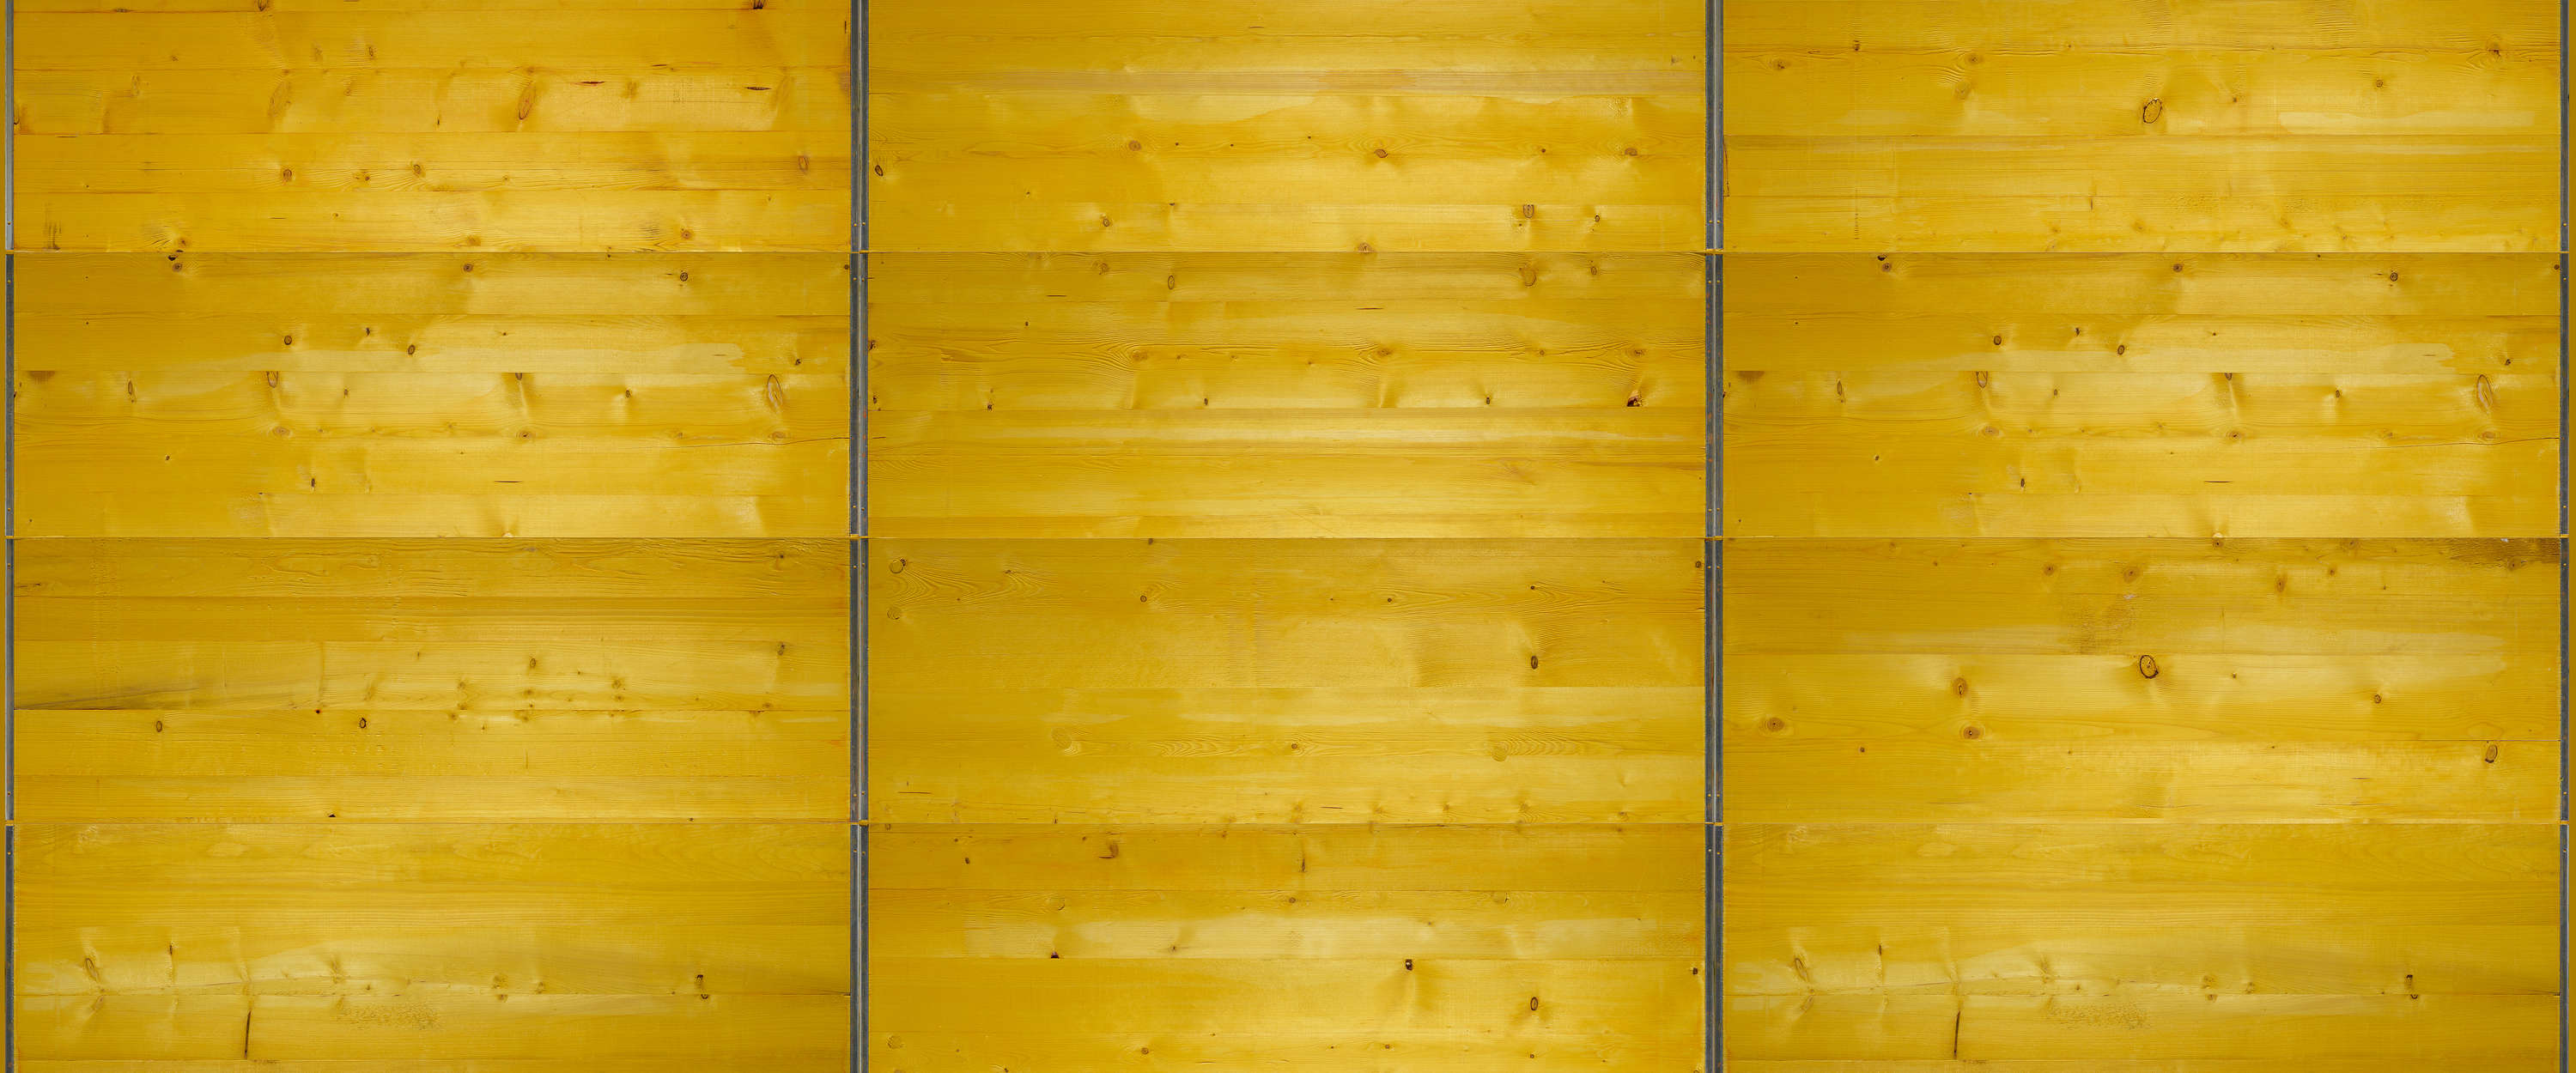             Photo wallpaper board shuttering in yellow
        